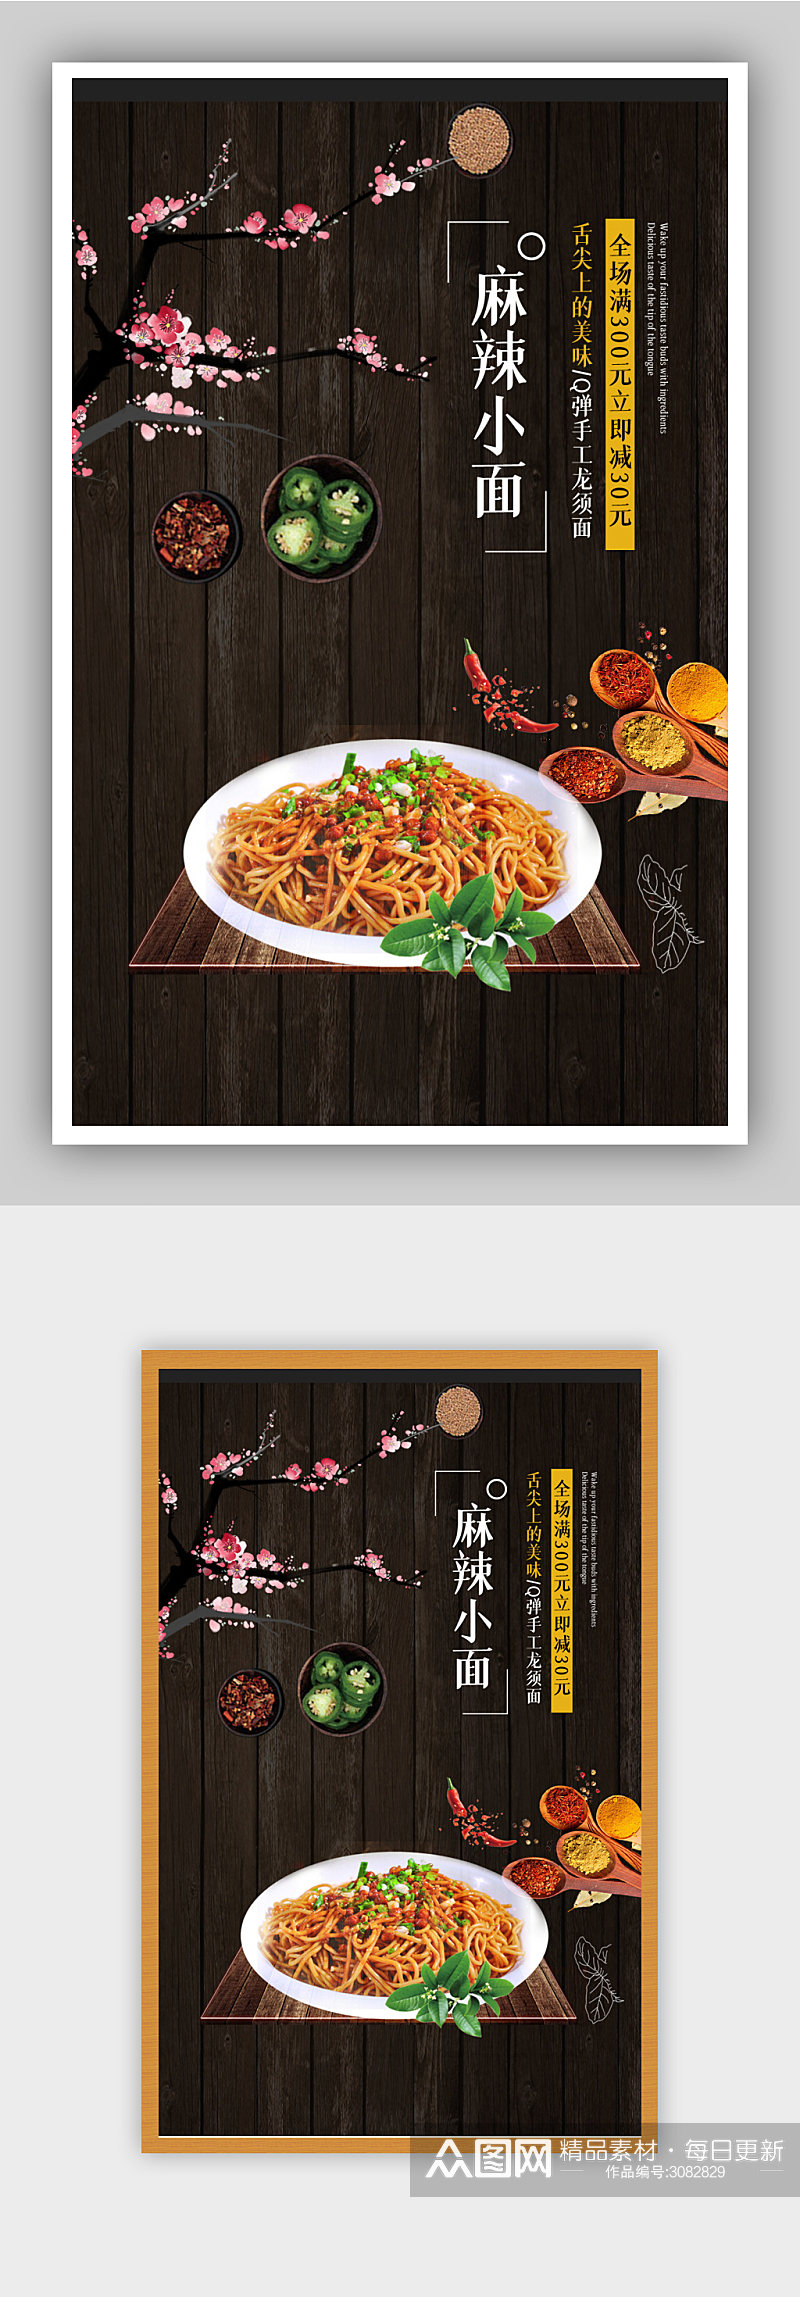 美味面条食物电商背景海报模板素材